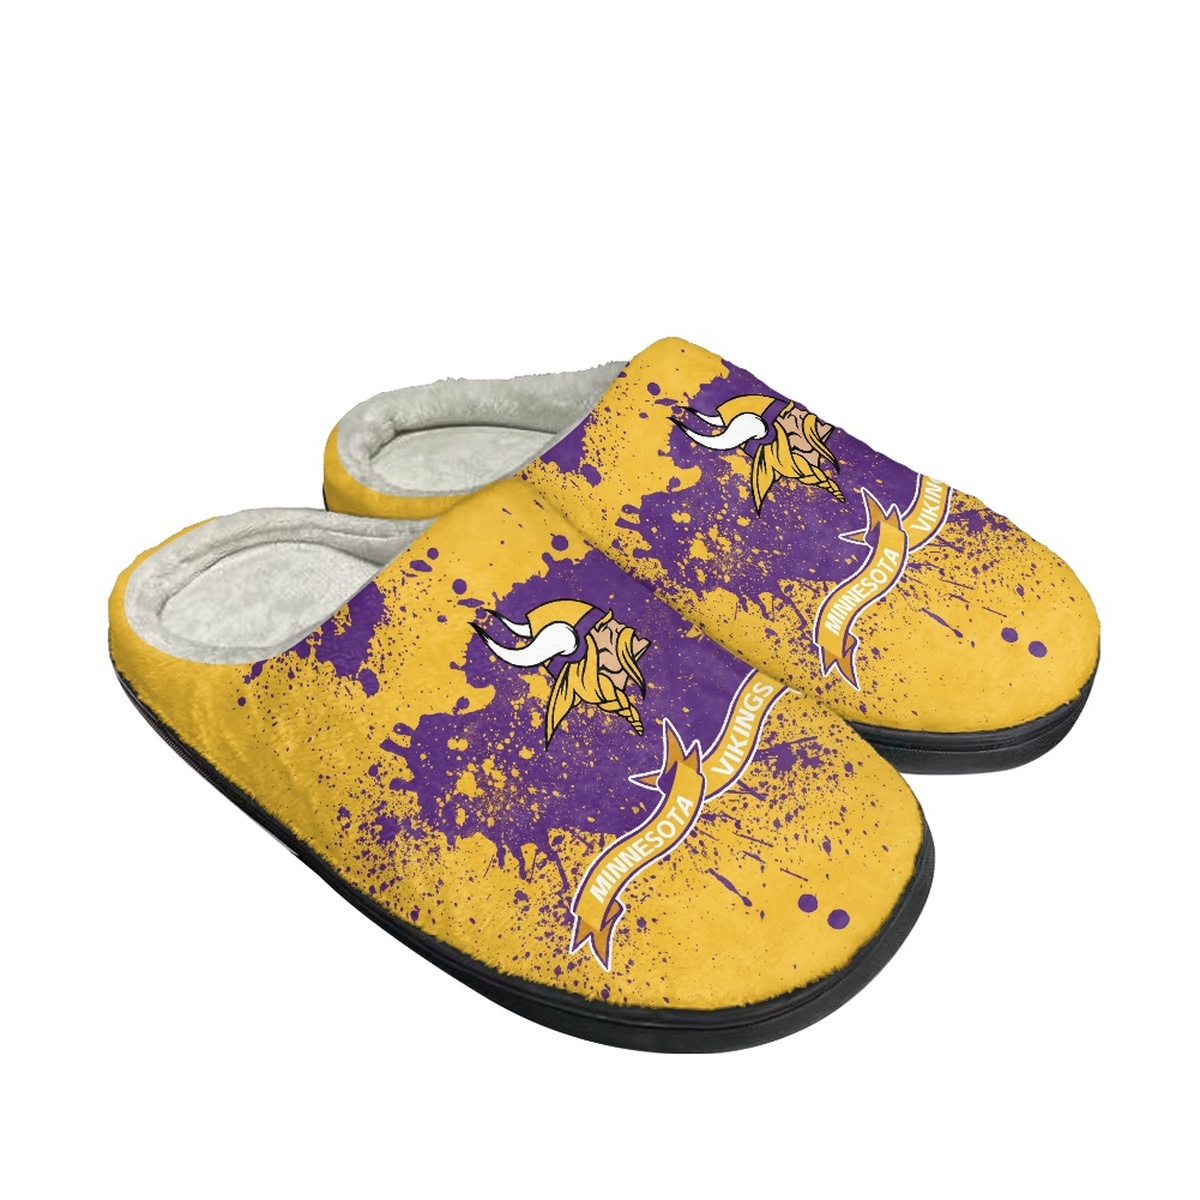 Men's Minnesota Vikings Slippers/Shoes 005